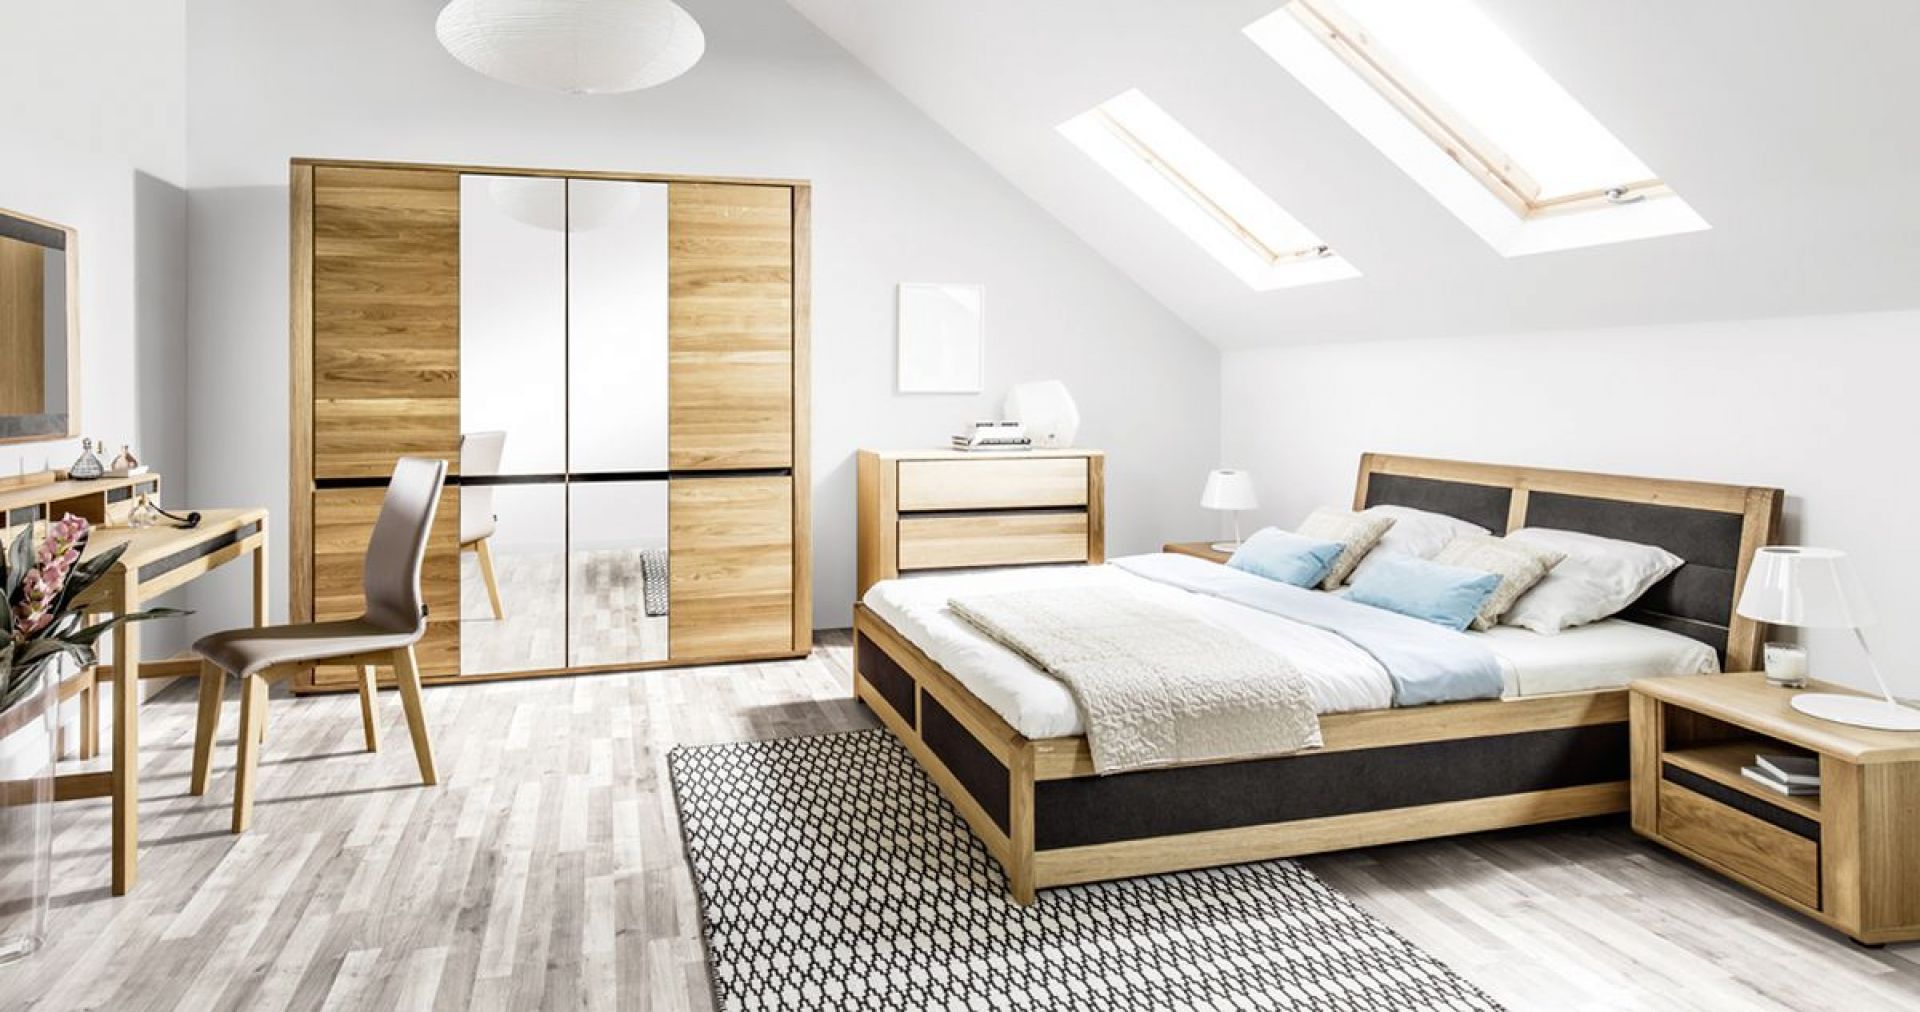 Sypialnia Hill rozjaśni sypialnię i doda jej elegancji. gustownym elementem są boki i zagłówek łóżka utrzymane w ciemnym kolorze. Fot. Paged